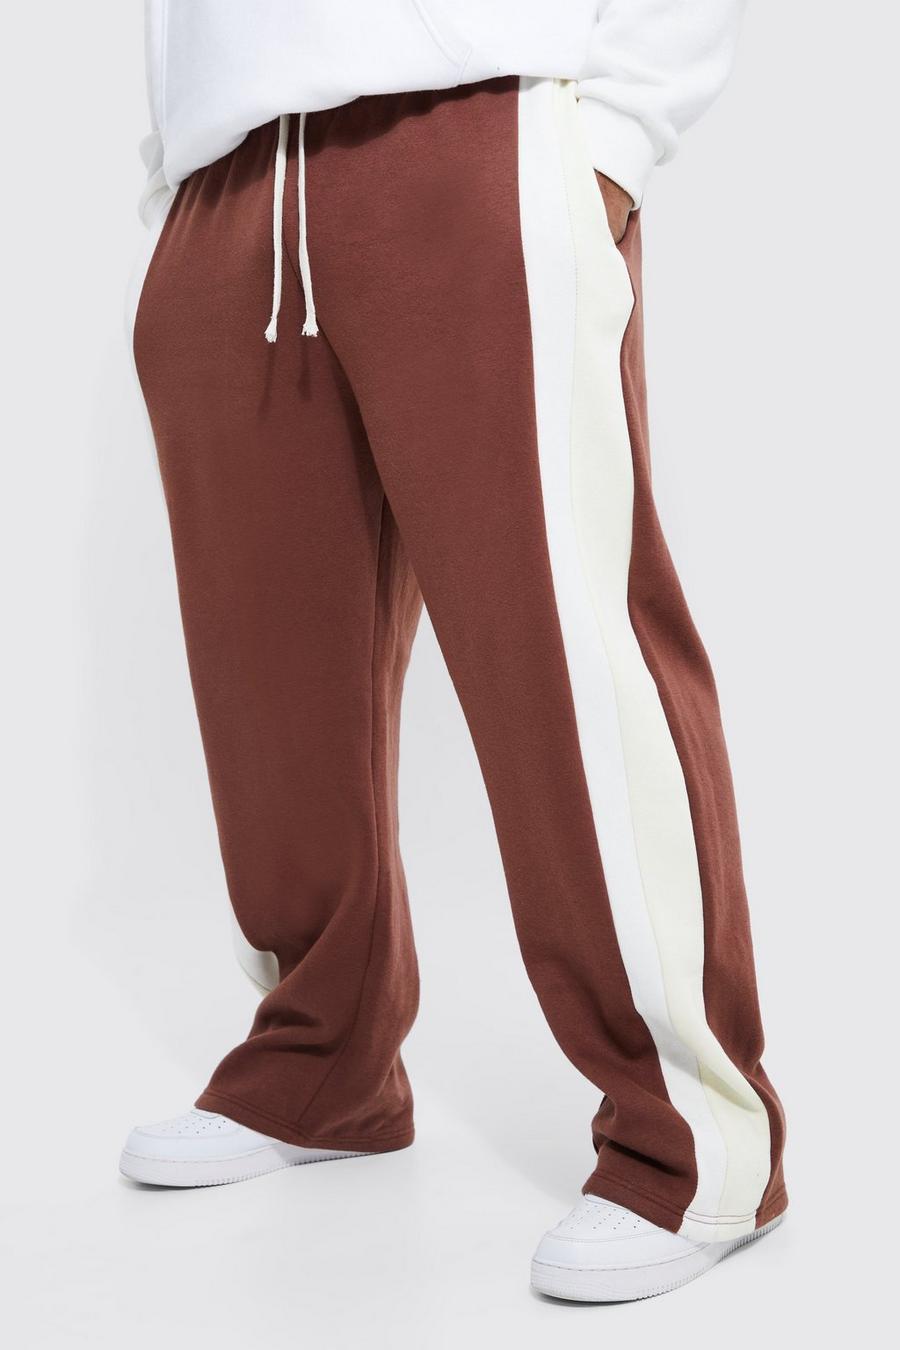 Pantalón deportivo Plus holgado con cinta lateral Design y cordón elástico, Chocolate marrone